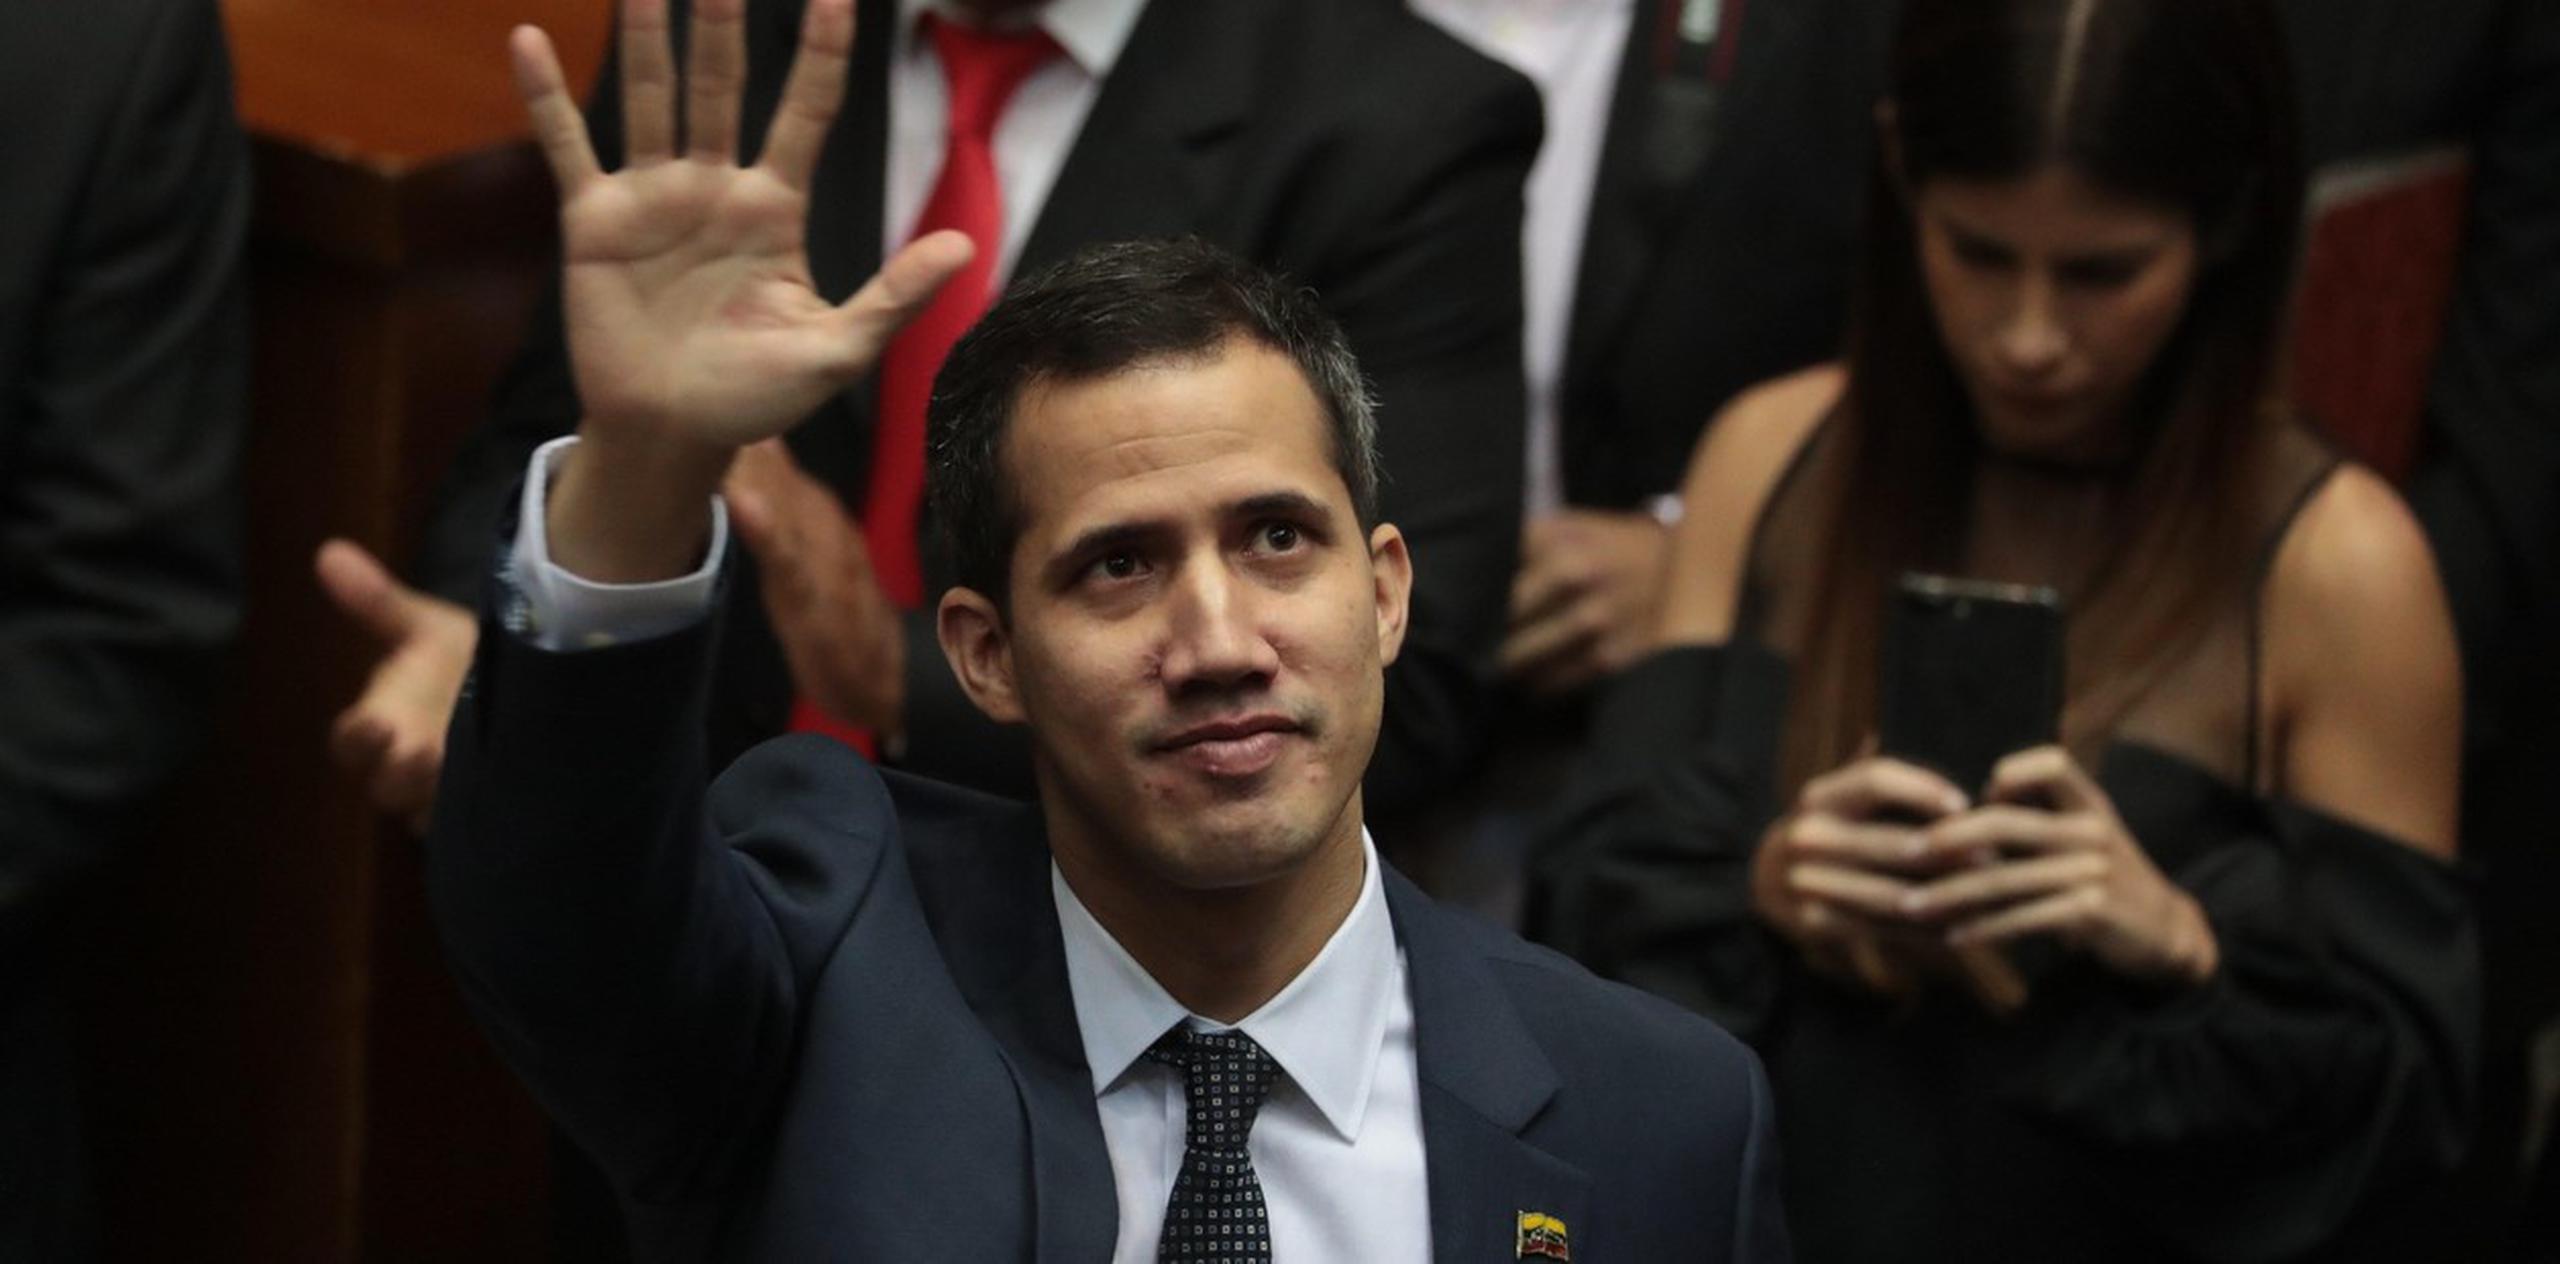 Según la interpretación de varias normas constitucionales, Guaidó dijo asumir en enero de 2019 el cargo de presidente interino de Venezuela, puesto en el que ha sido reconocido por casi 60 países. (Archivo)